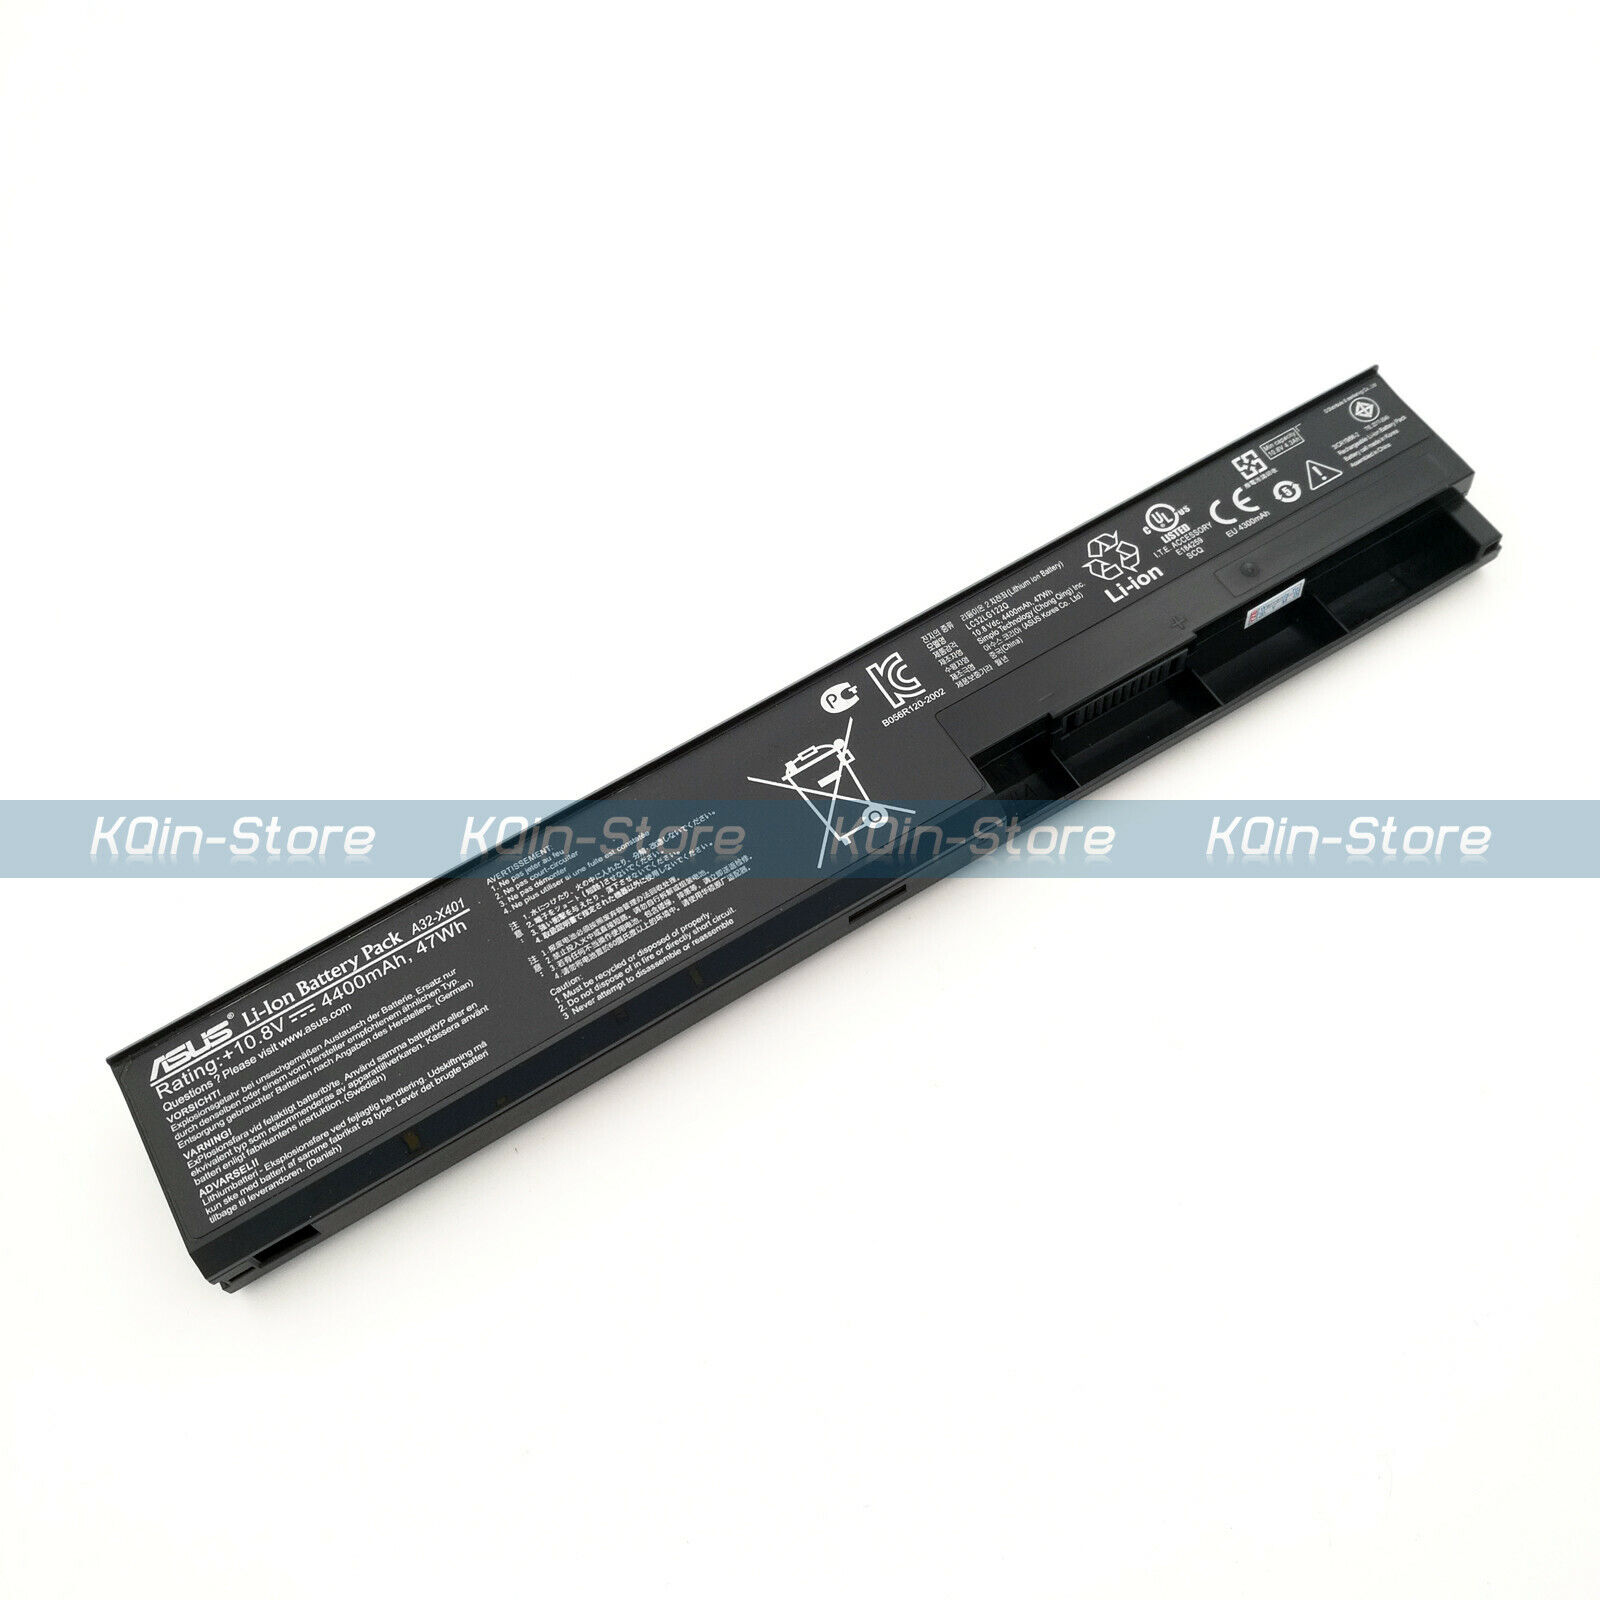 New Genuine Asus Battery for X301 X301A X301U X401 X401A X401U X501A X501U S301U